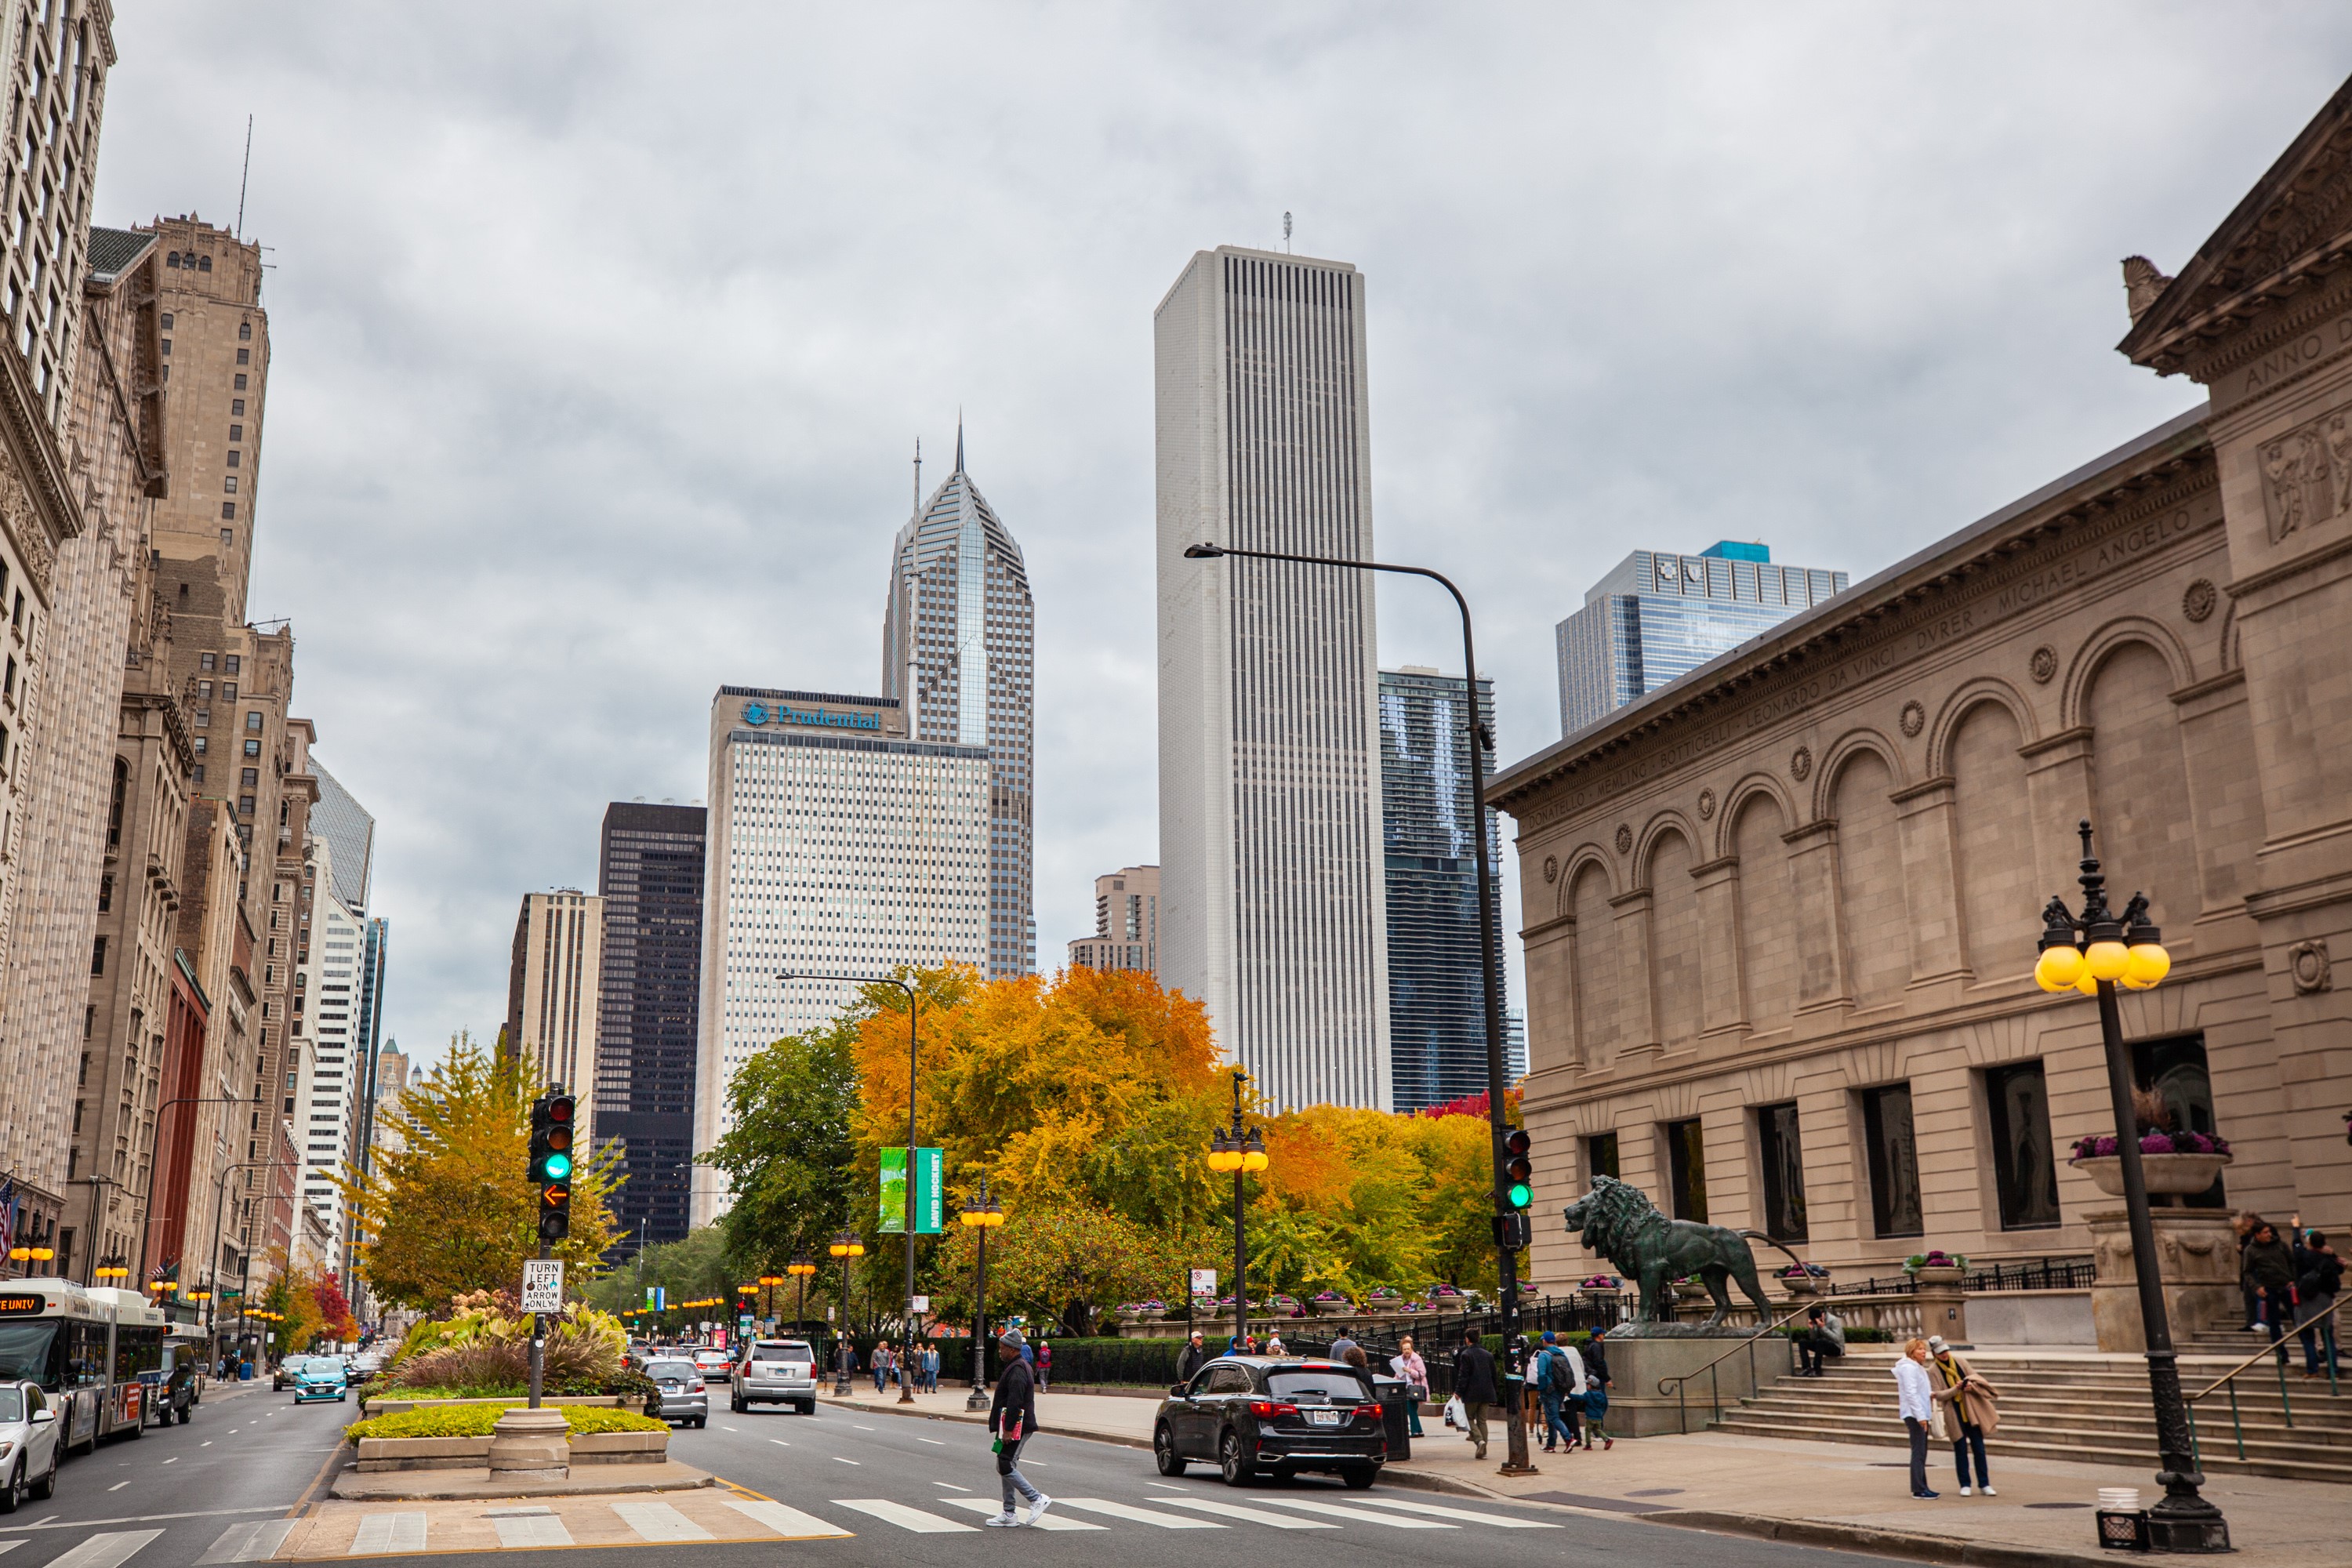 chicago es la ciudad más transitable de estados unidos para turistas, según estudio